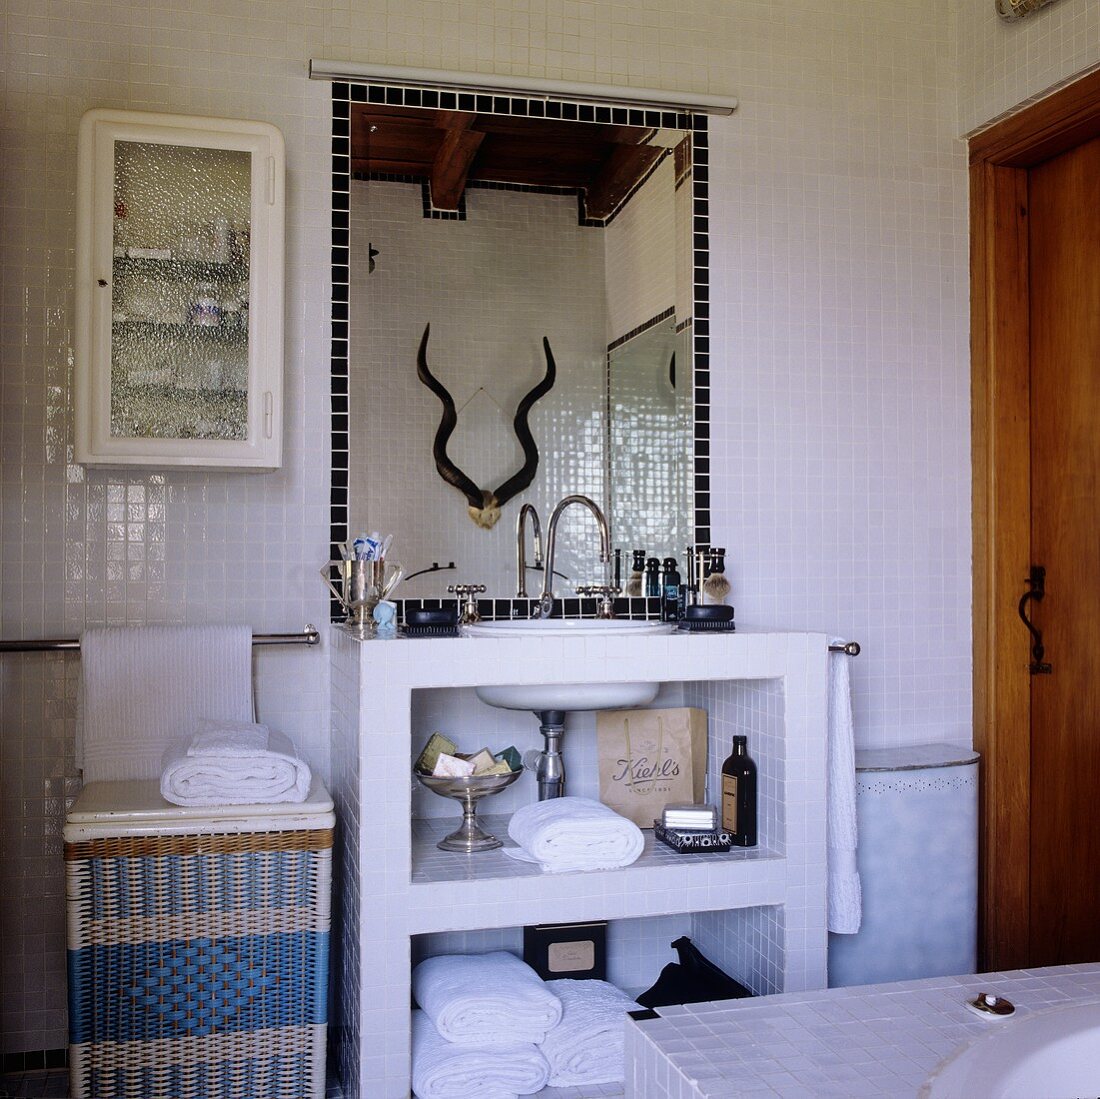 Bad in einem südafrikanischen Landhaus - gemauerter Waschtisch mit Spiegel an weisser Mosaikfliesenwand